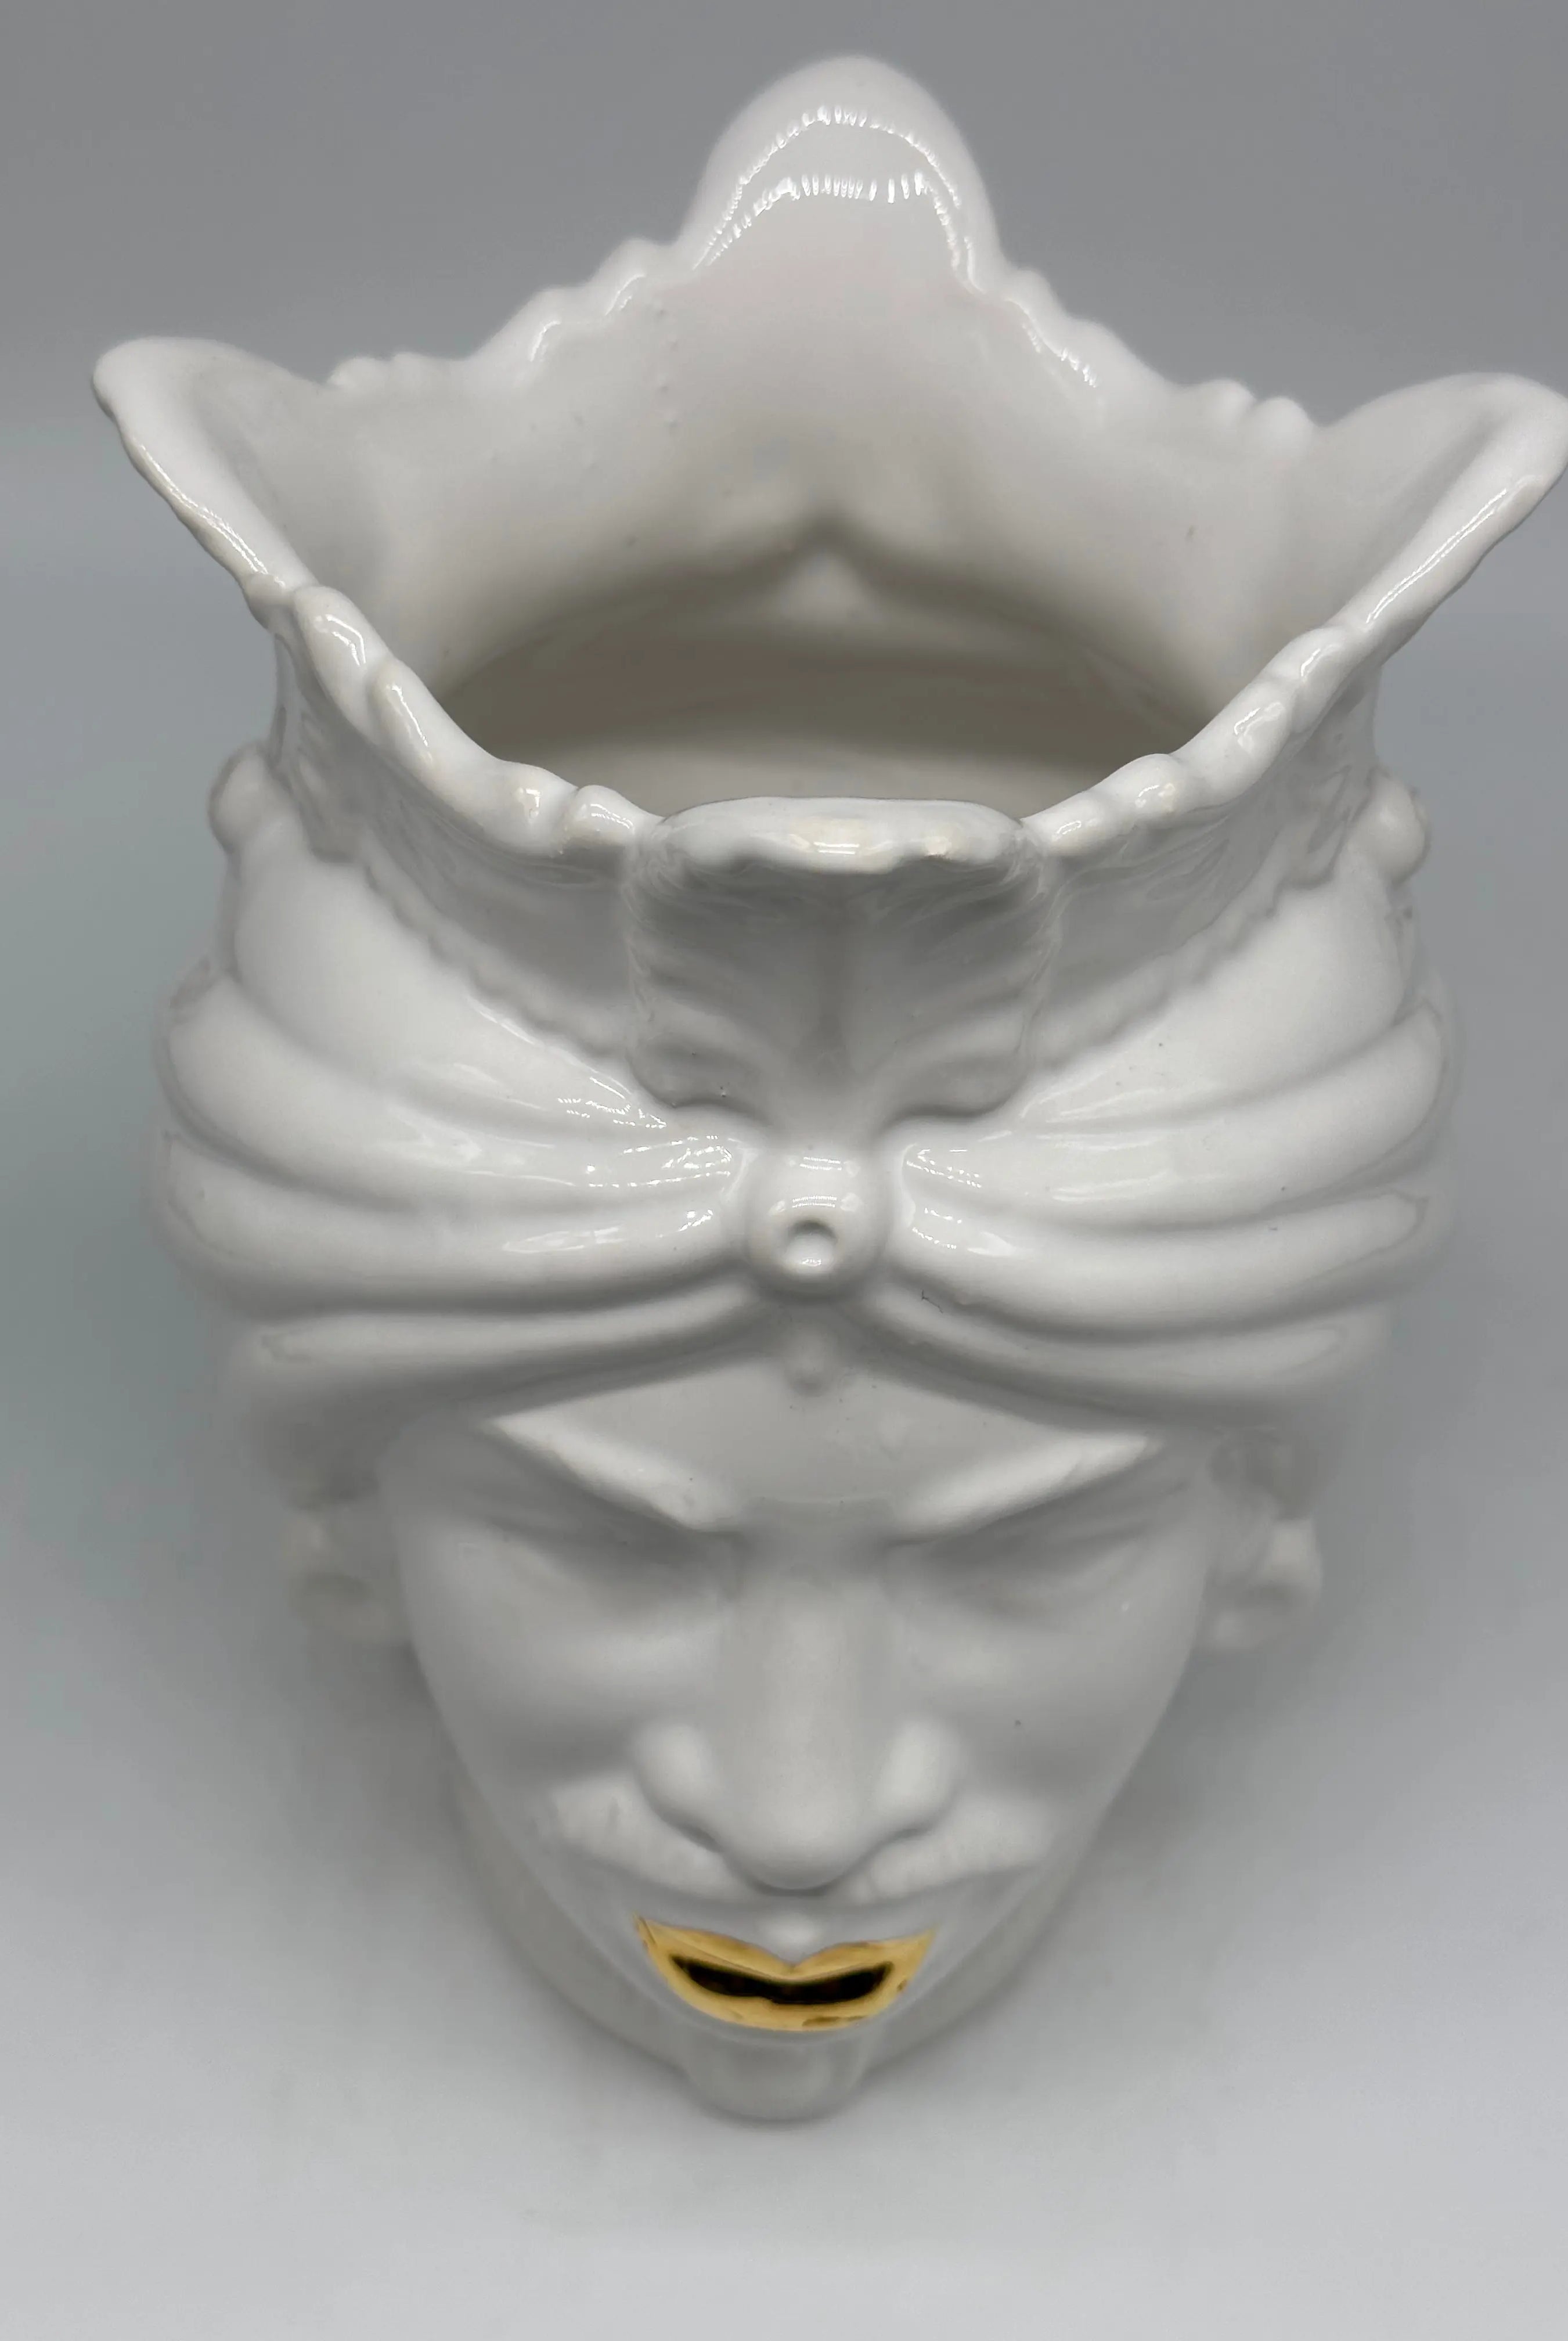 FINE SERIE - Testa di Moro Afro Uomo Ceramica Caltagirone cm H.25 L.17 Artigianale Bianco dettagli Oro DD CERAMICHE SICILIANE